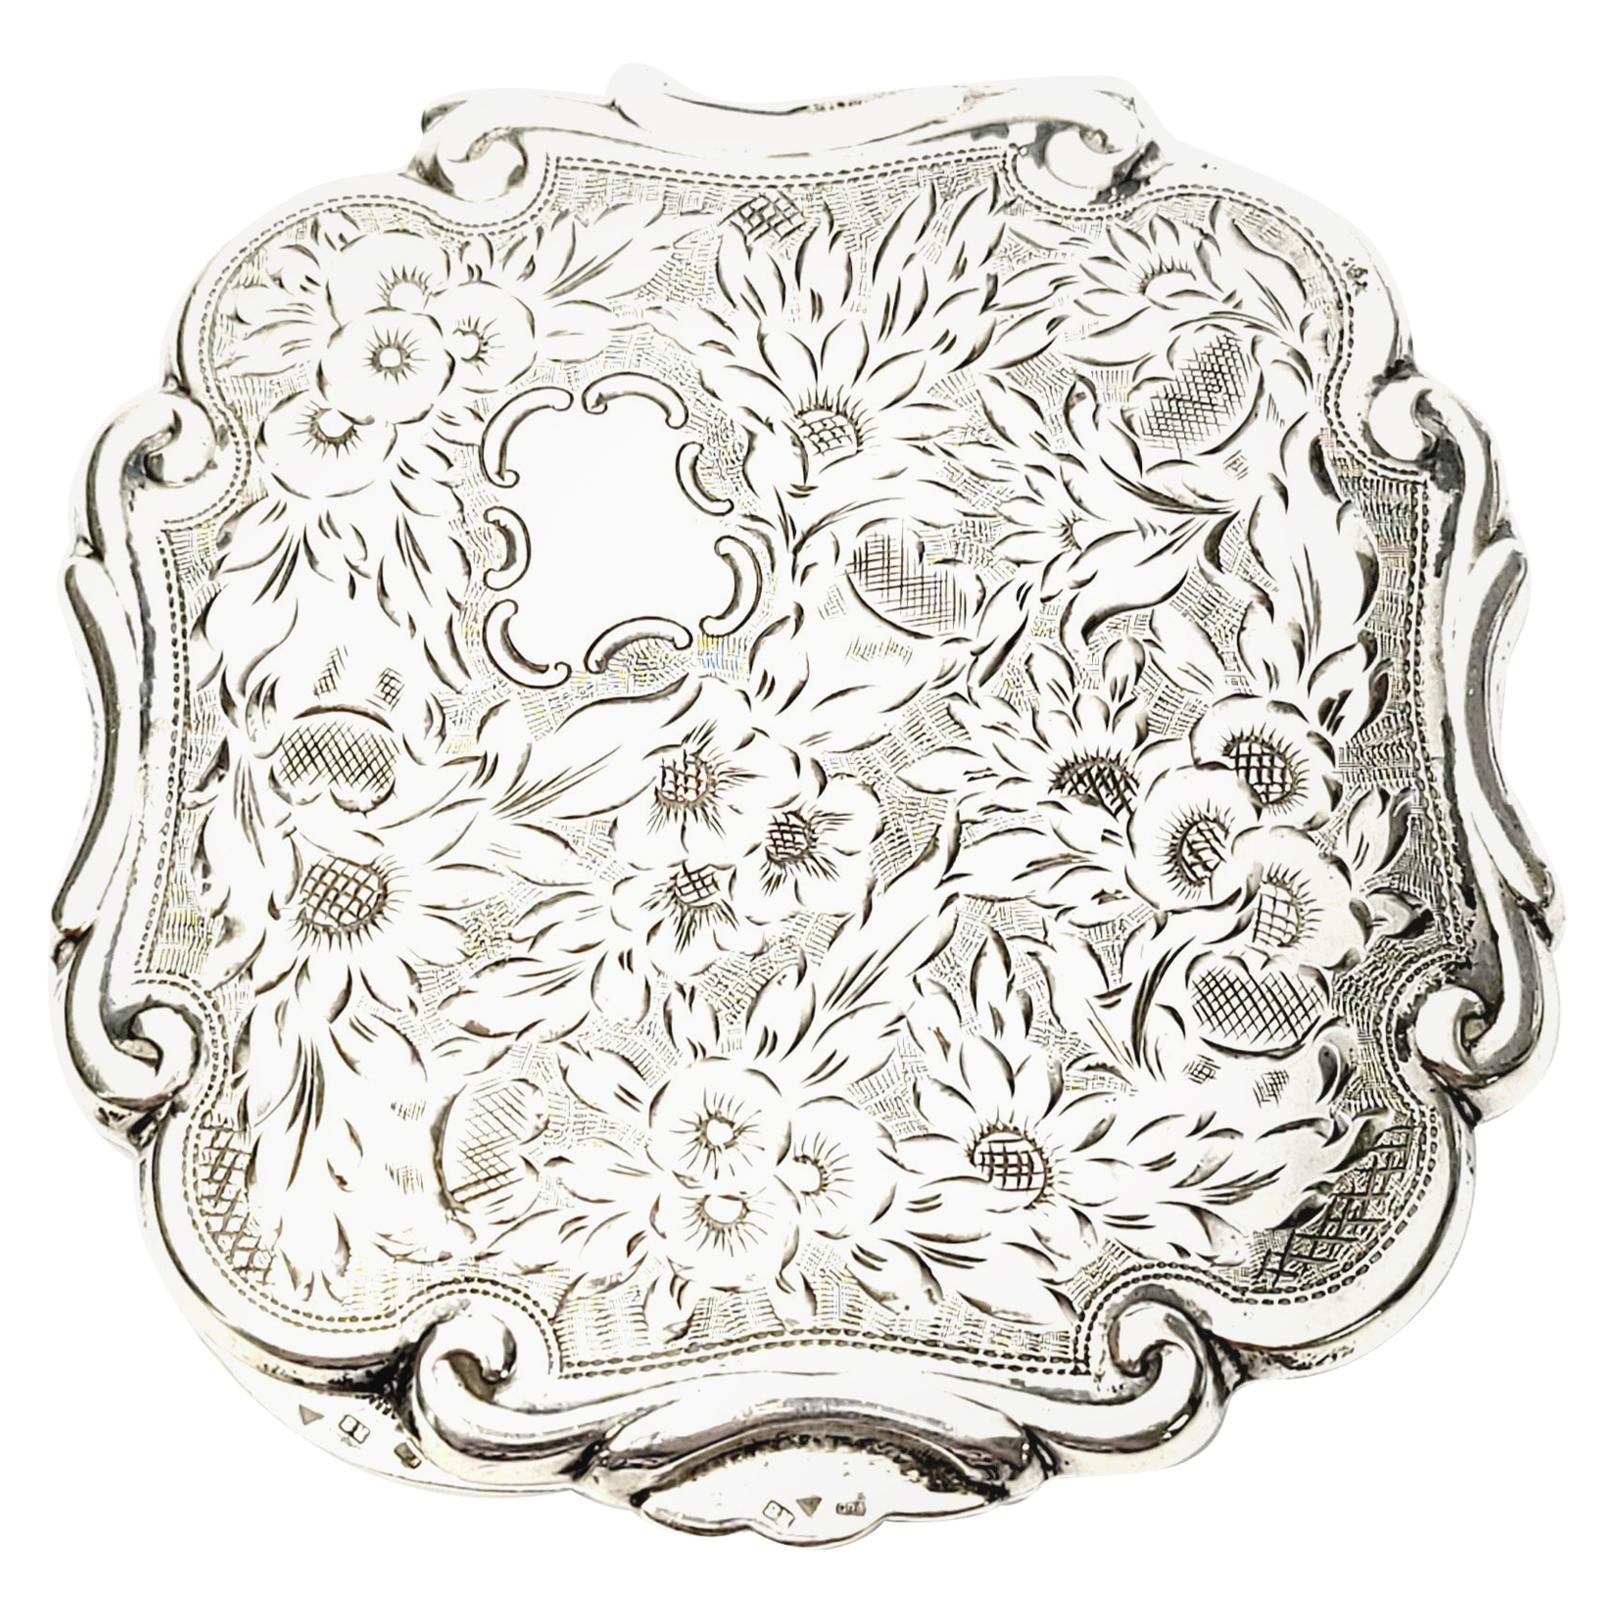 Compact, mit Blumen und Streifen geätztes Silber 900er Jahre